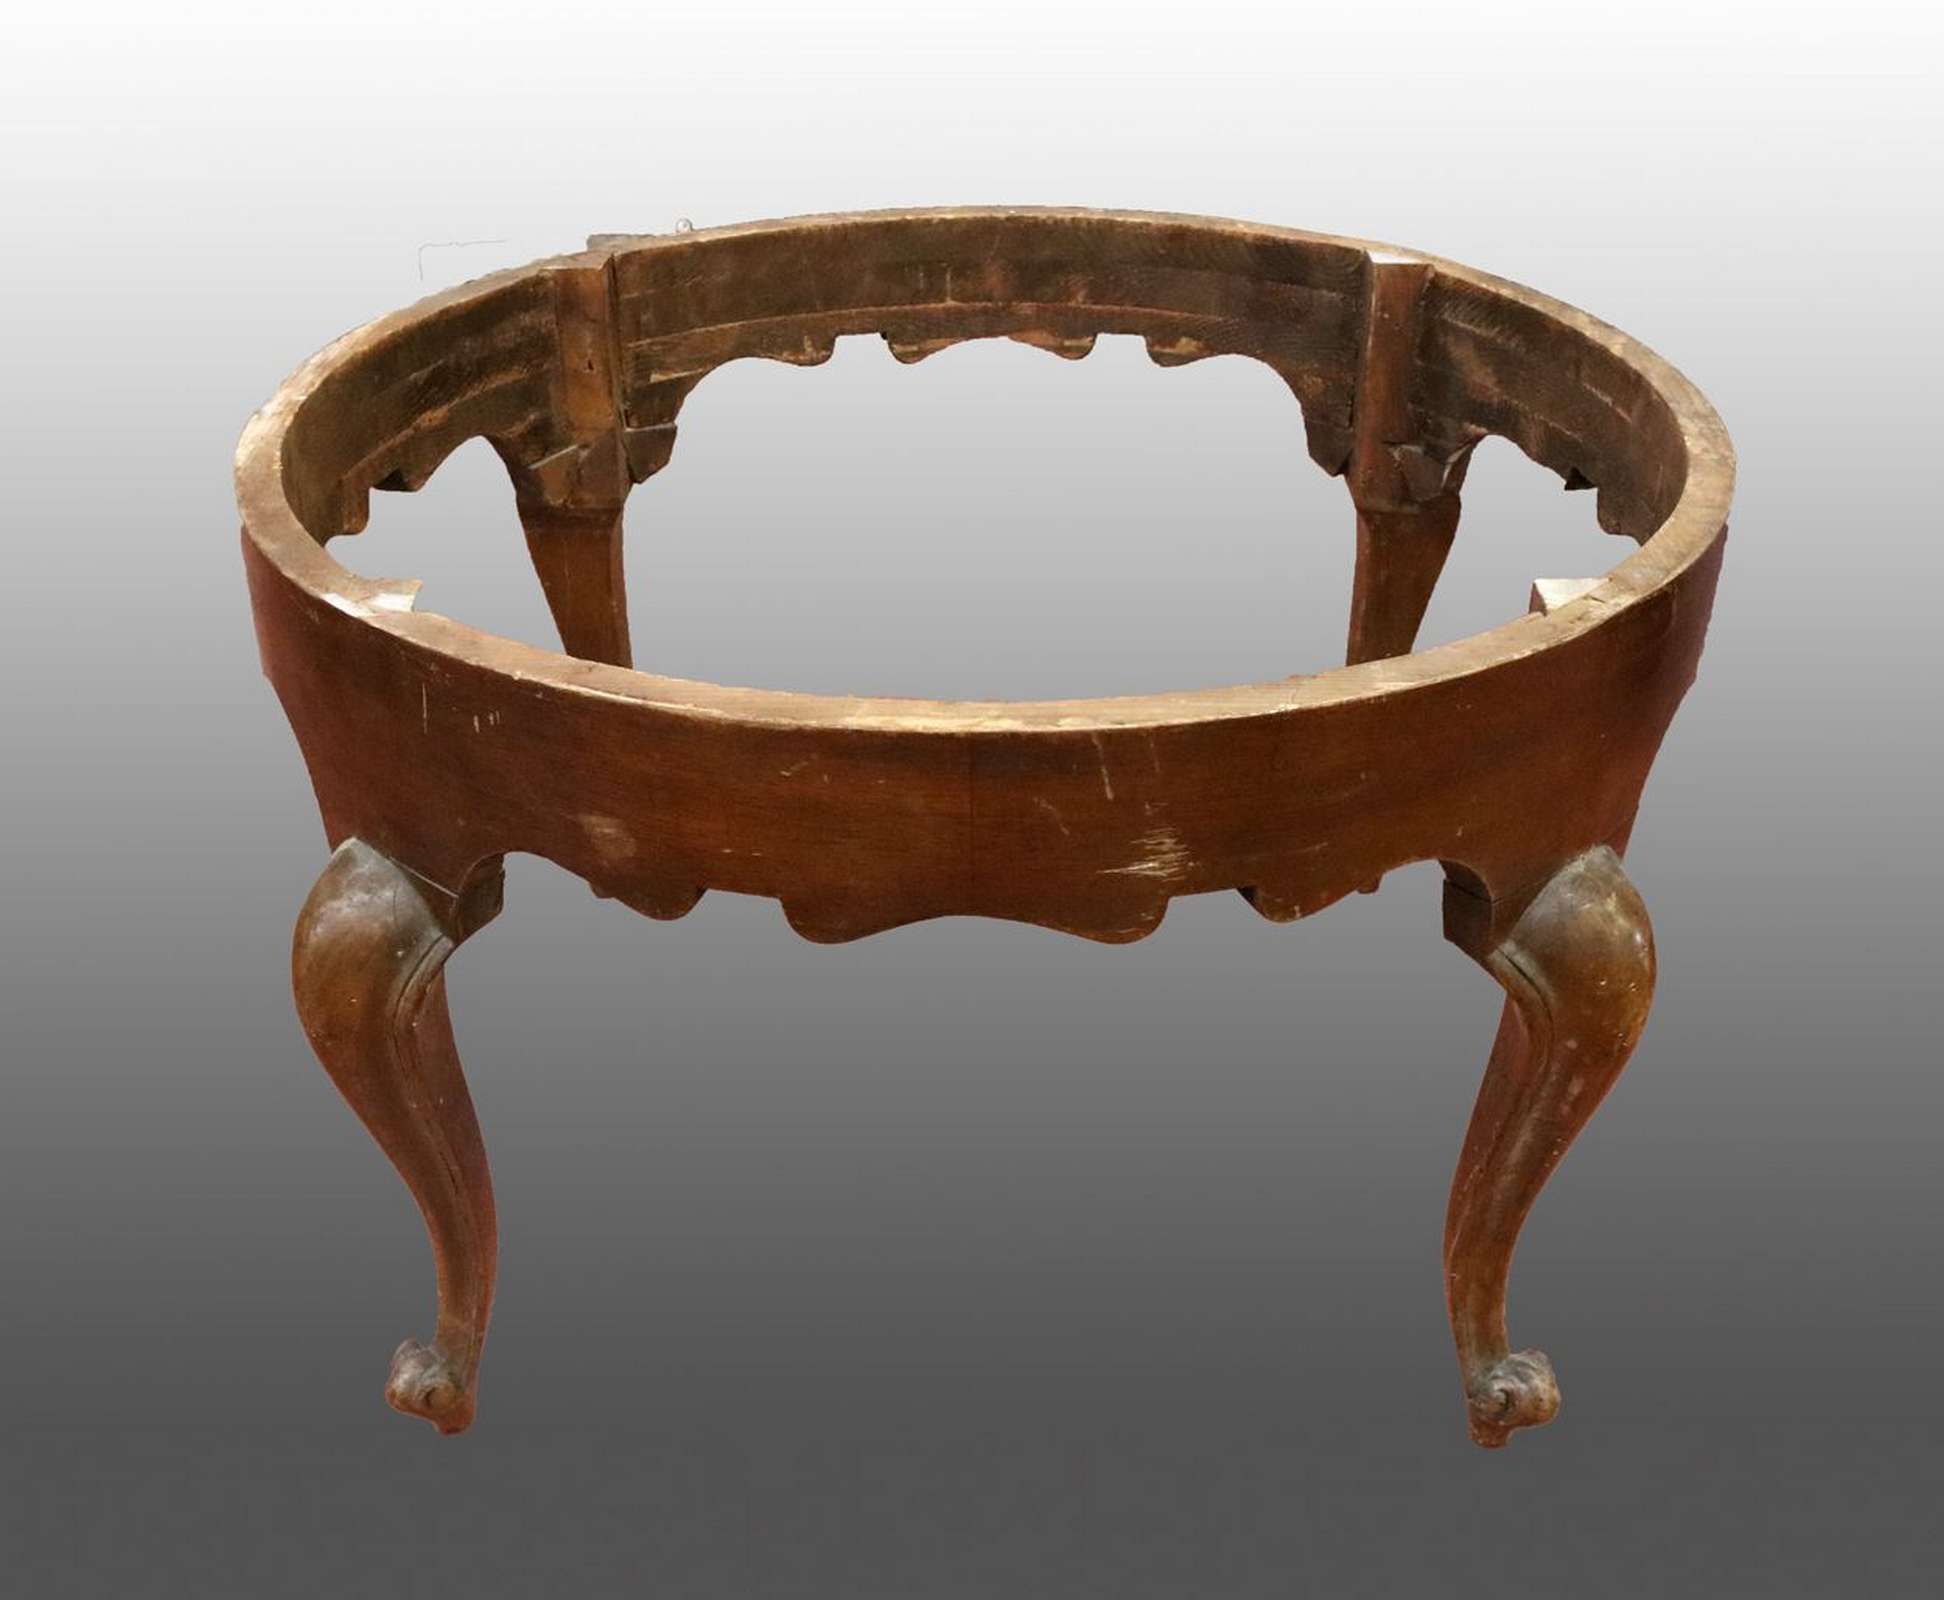 Antica base da tavolo in legno. Epoca primi 1900. - Tavoli Antichi - Mobili antichi - Prodotti - Antichità Fiorillo